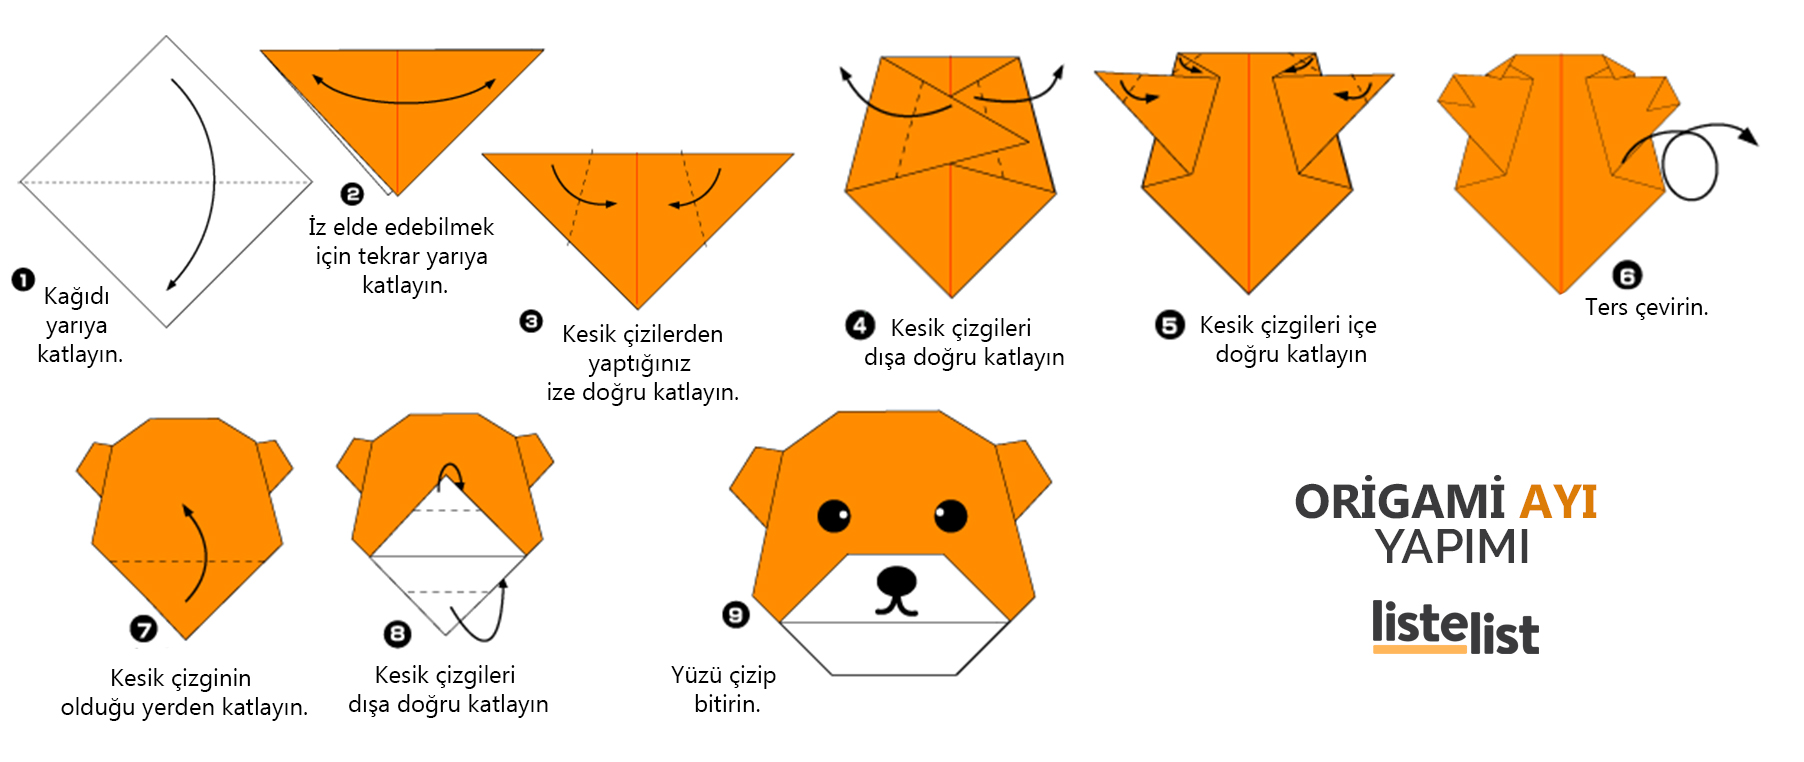 Origami Kelebek Yapmak Resimli Anlatim Kendinyapsana Com